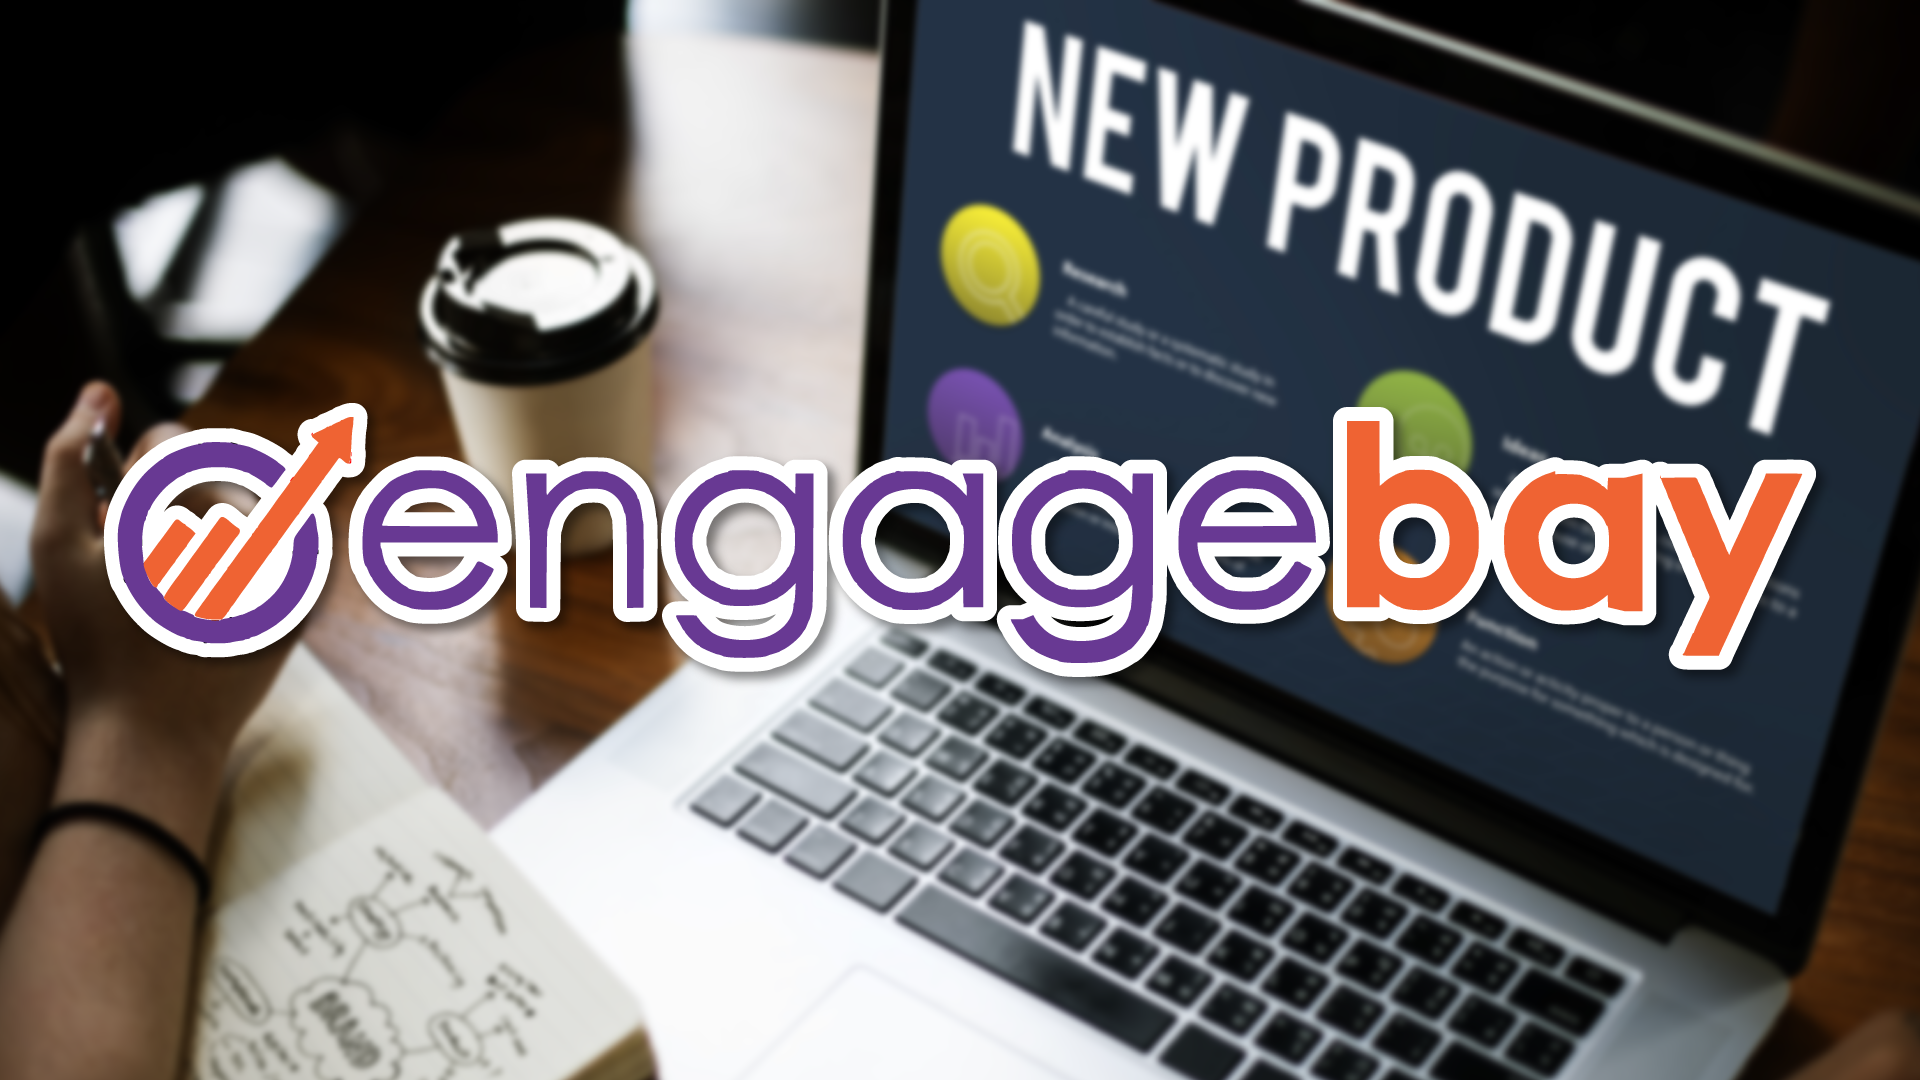 engagebay vs hubspot, hubspot engagebay, hubspot vs engagebay, engagebay alternatives, engagebay tutorial